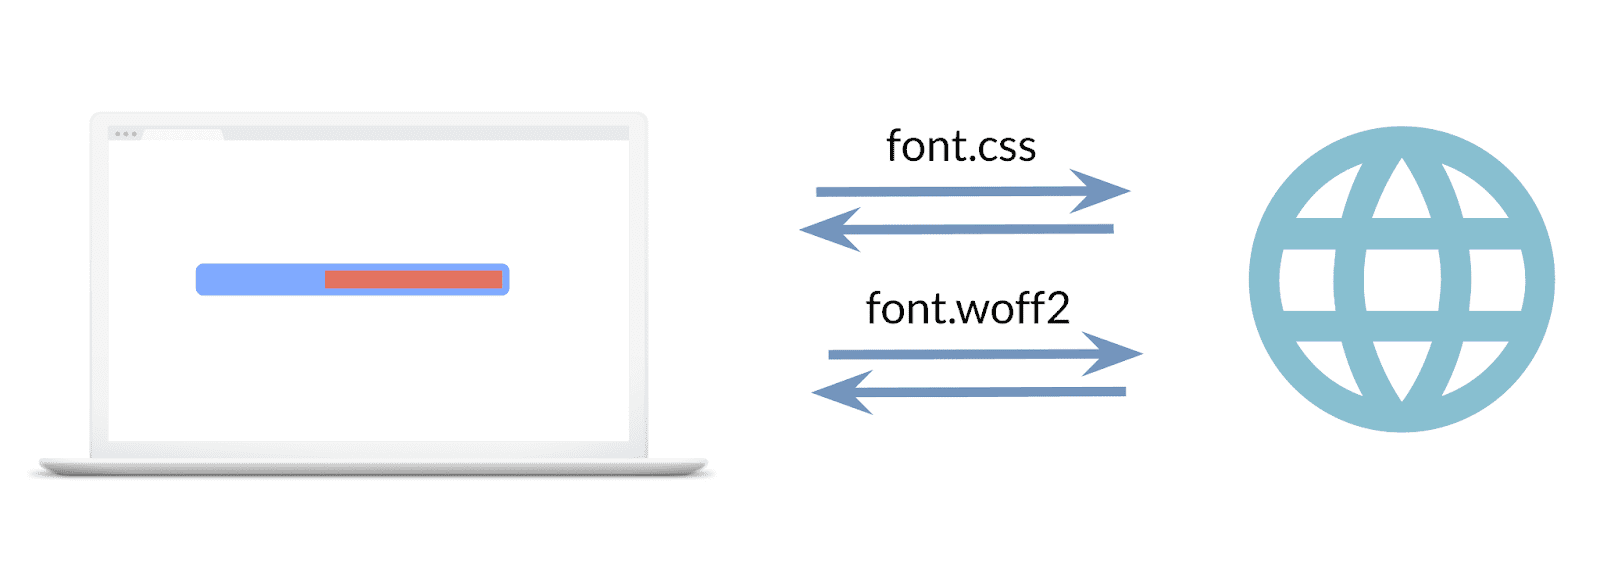 Gambar yang menampilkan dua permintaan yang dibuat, satu untuk stylesheet font, yang kedua untuk file font.